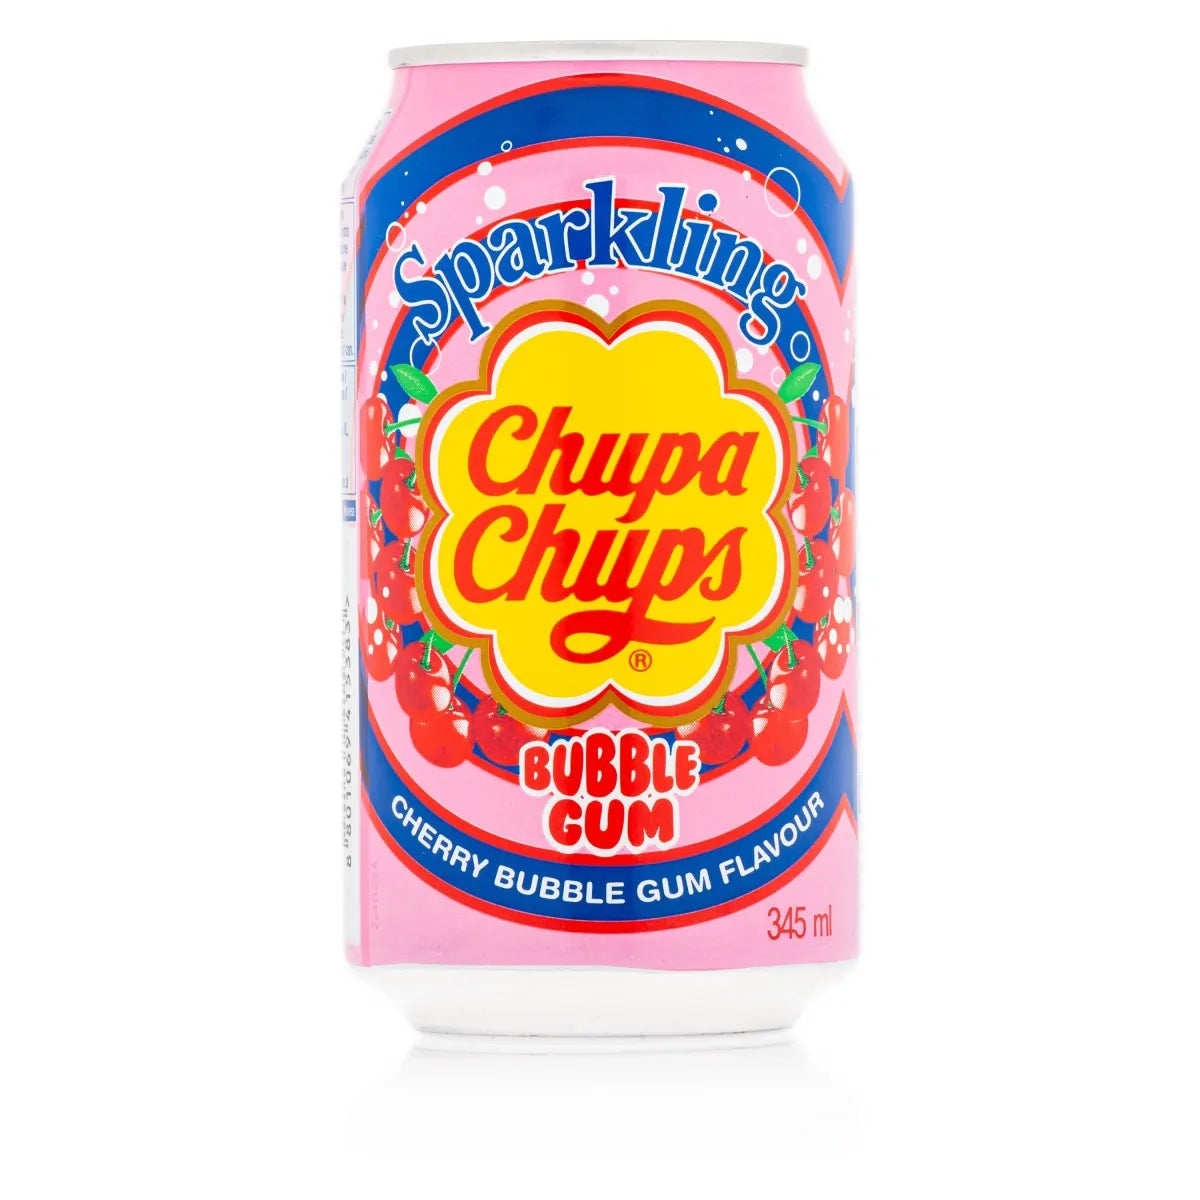 Chupa Chups Bubble-Gum Dose, 345ml